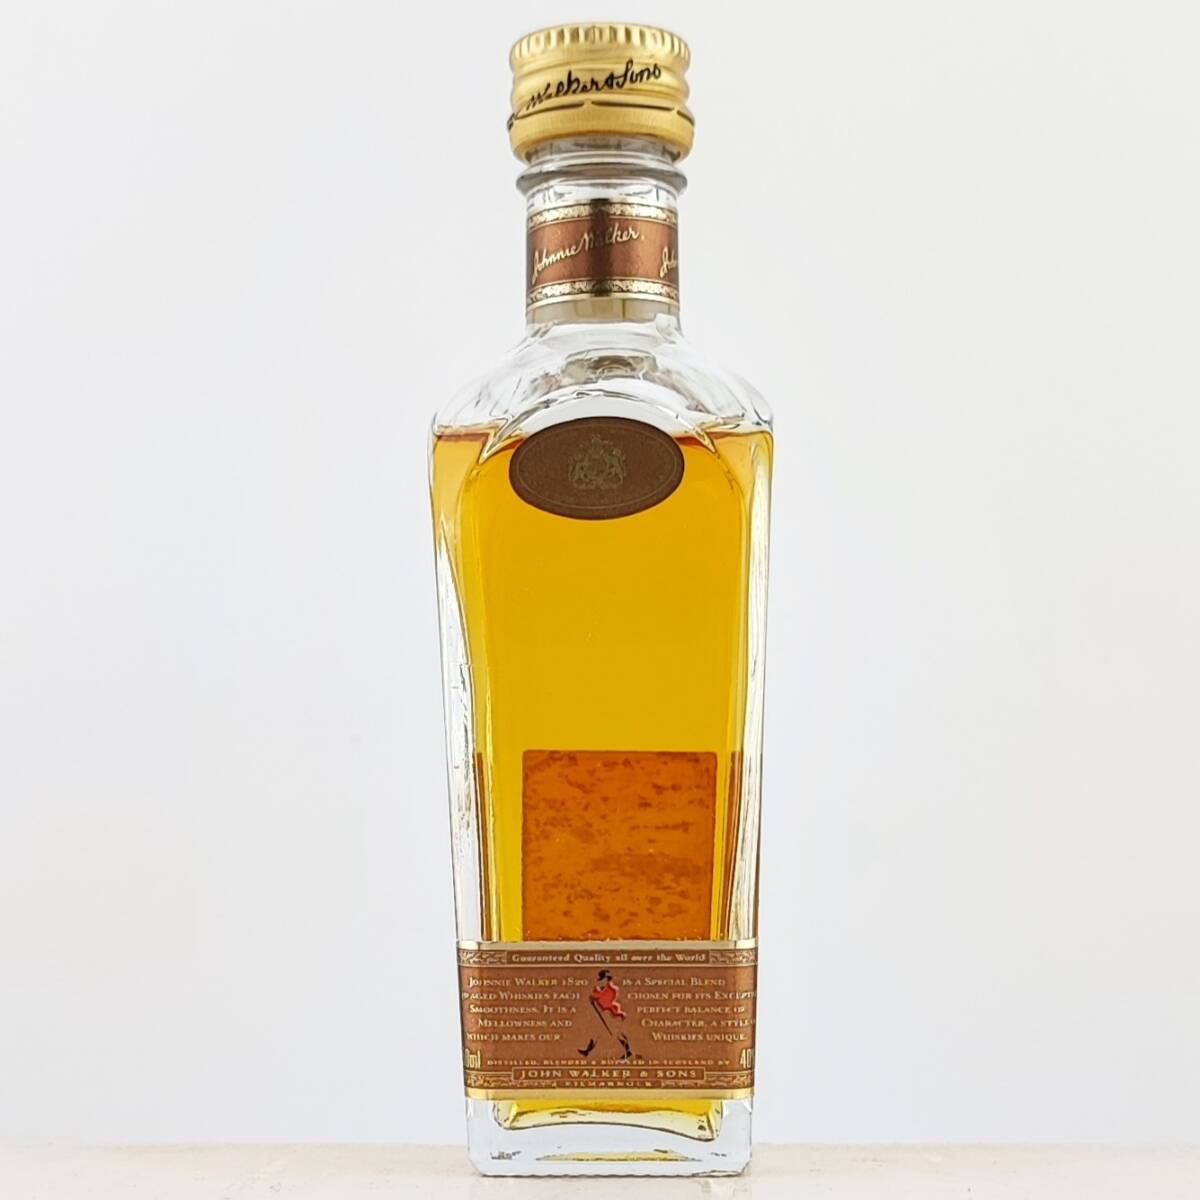 【全国送料無料】Johnnie Walker 1820 Special Blend Exceptionally Smooth Old Scotch Whisky 40度 50ml【ジョニーウォーカー】の画像1